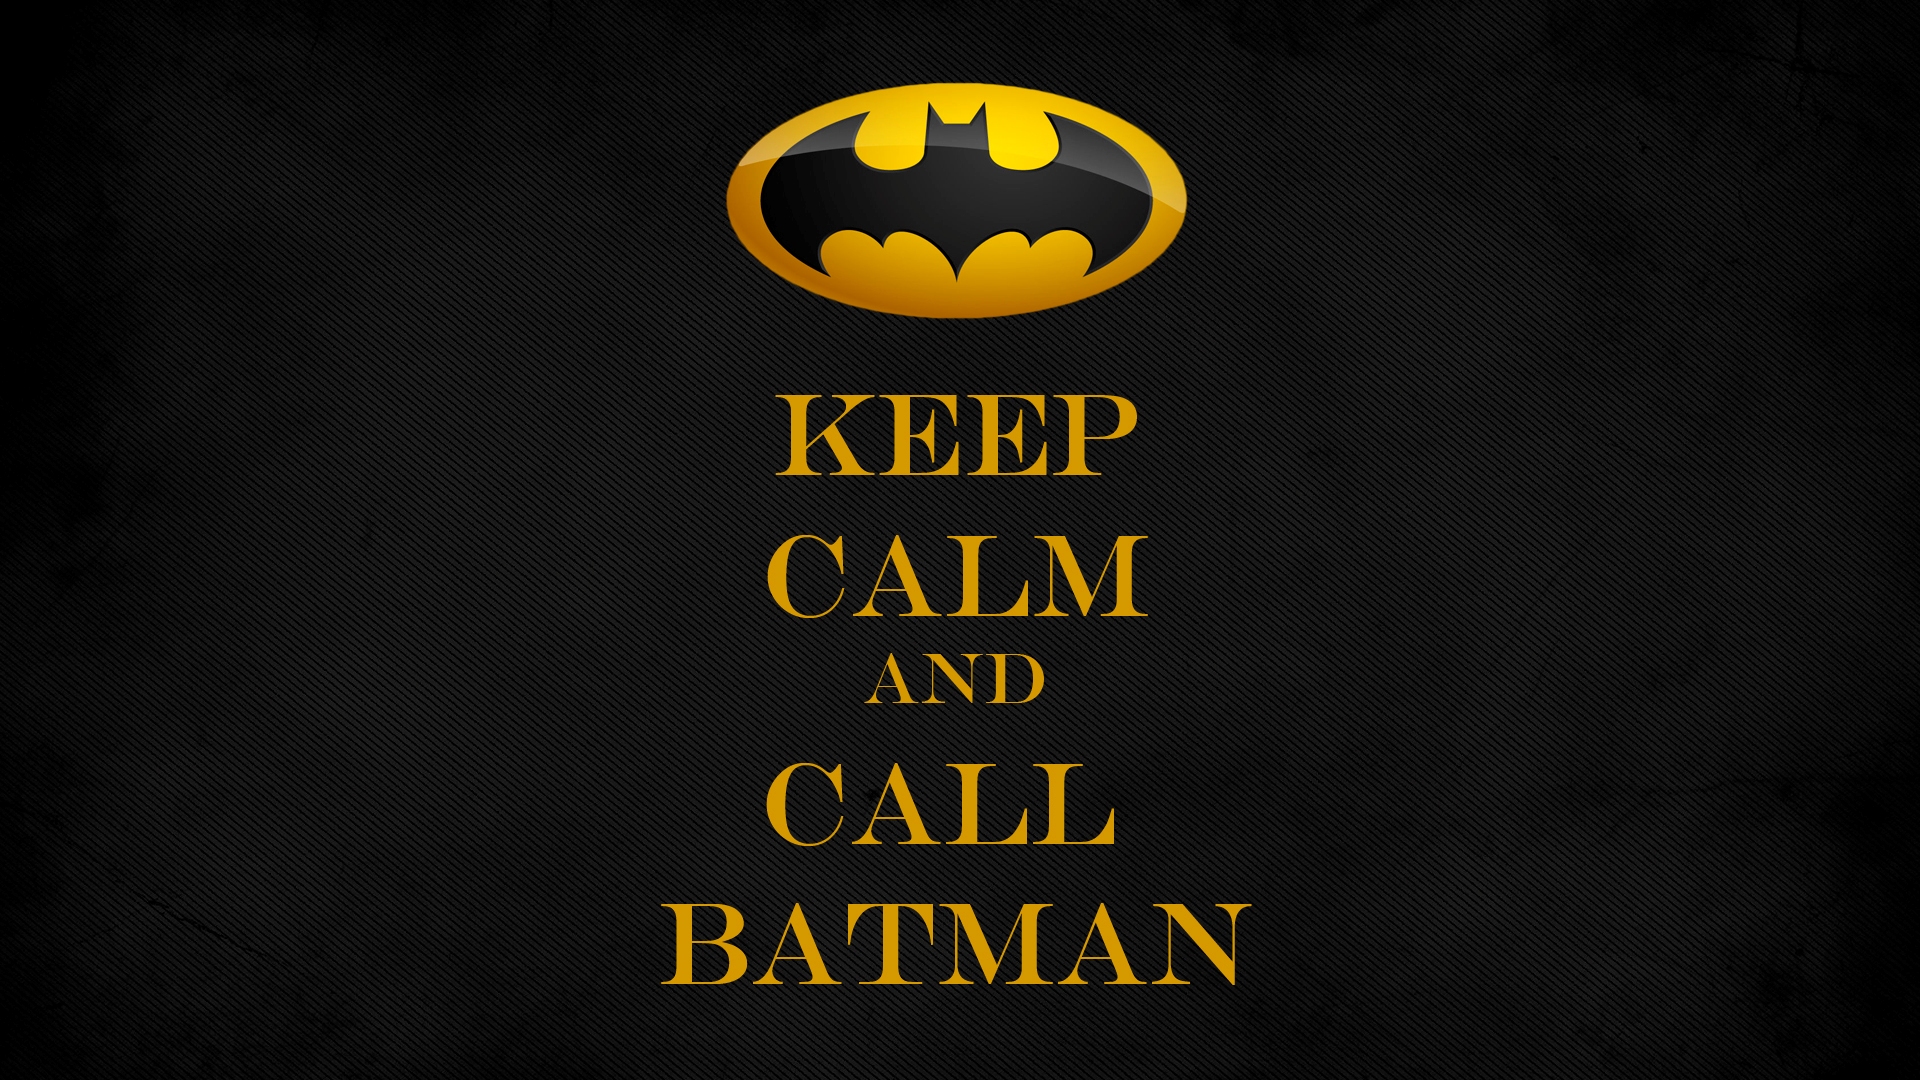 General 1920x1080 Batman Batman logo Keep Calm and... DC Comics comics superhero humor yellow